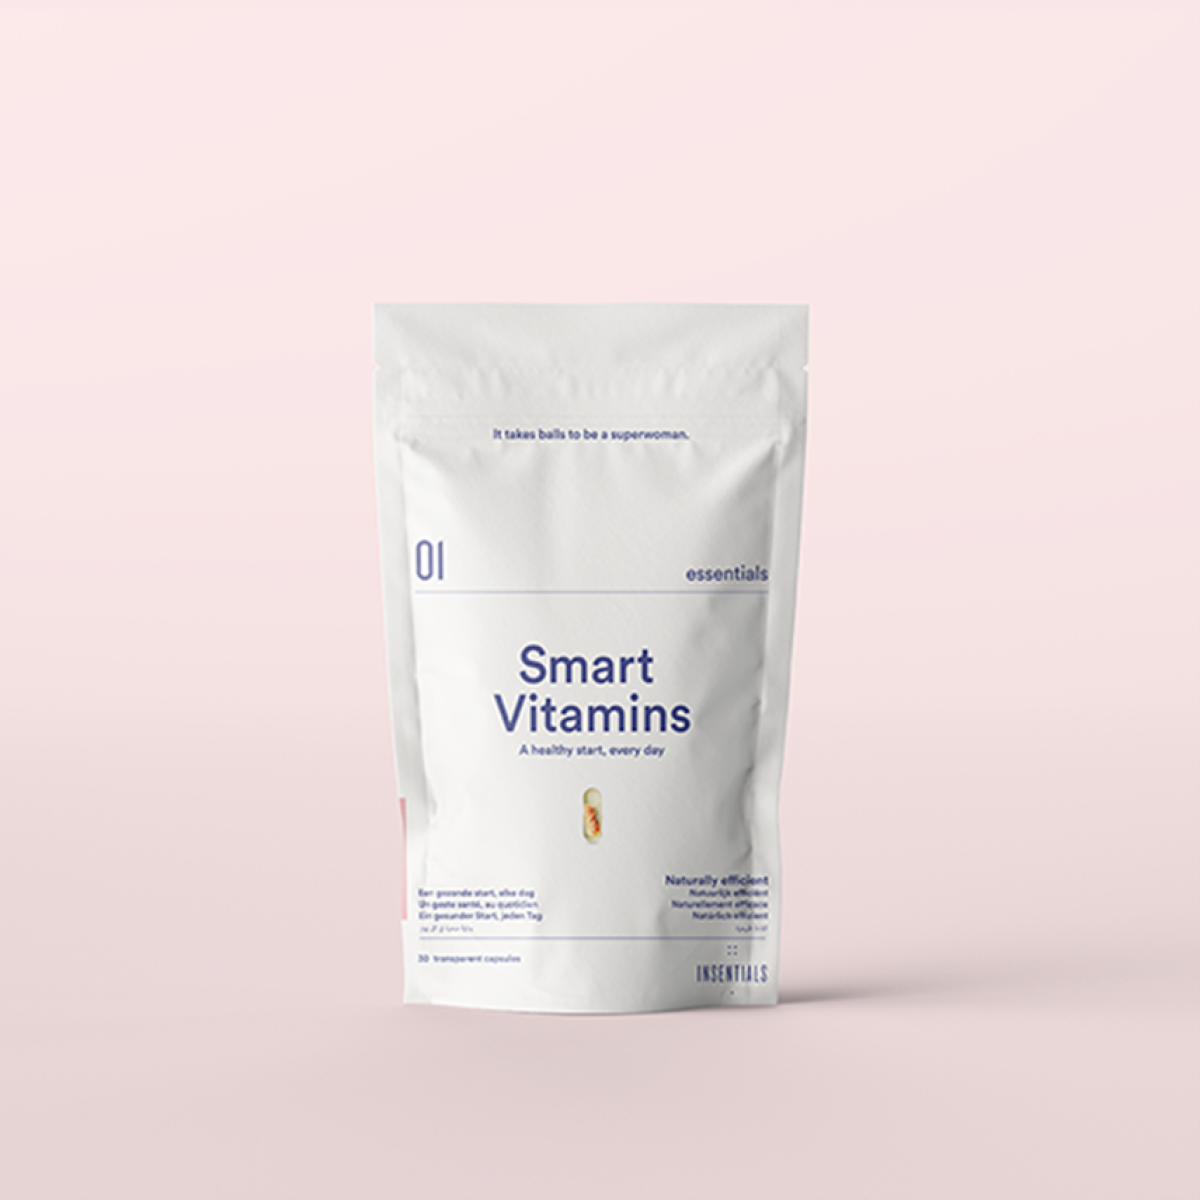 01 Insentials Smart Vitamins  - 30 caps